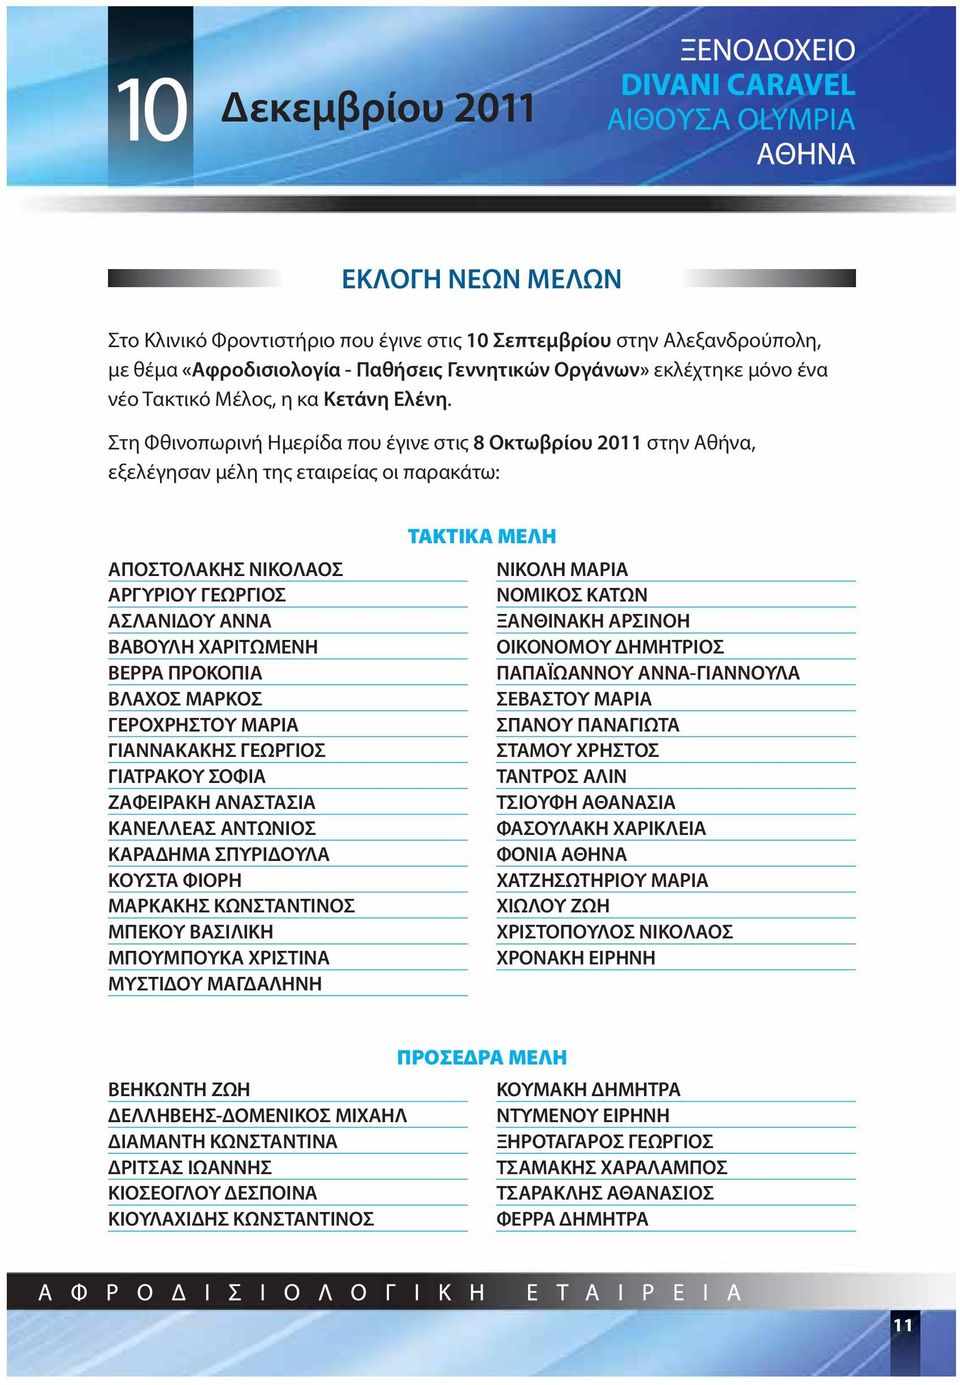 Στη Φθινοπωρινή Ημερίδα που έγινε στις 8 Οκτωβρίου 2011 στην Αθήνα, εξελέγησαν μέλη της εταιρείας οι παρακάτω: ΑΠΟΣΤΟΛΑΚΗΣ ΝΙΚΟΛΑΟΣ ΑΡΓΥΡΙΟΥ ΓΕΩΡΓΙΟΣ ΑΣΛΑΝΙΔΟΥ ΑΝΝΑ ΒΑΒΟΥΛΗ ΧΑΡΙΤΩΜΕΝΗ ΒΕΡΡΑ ΠΡΟΚΟΠΙΑ